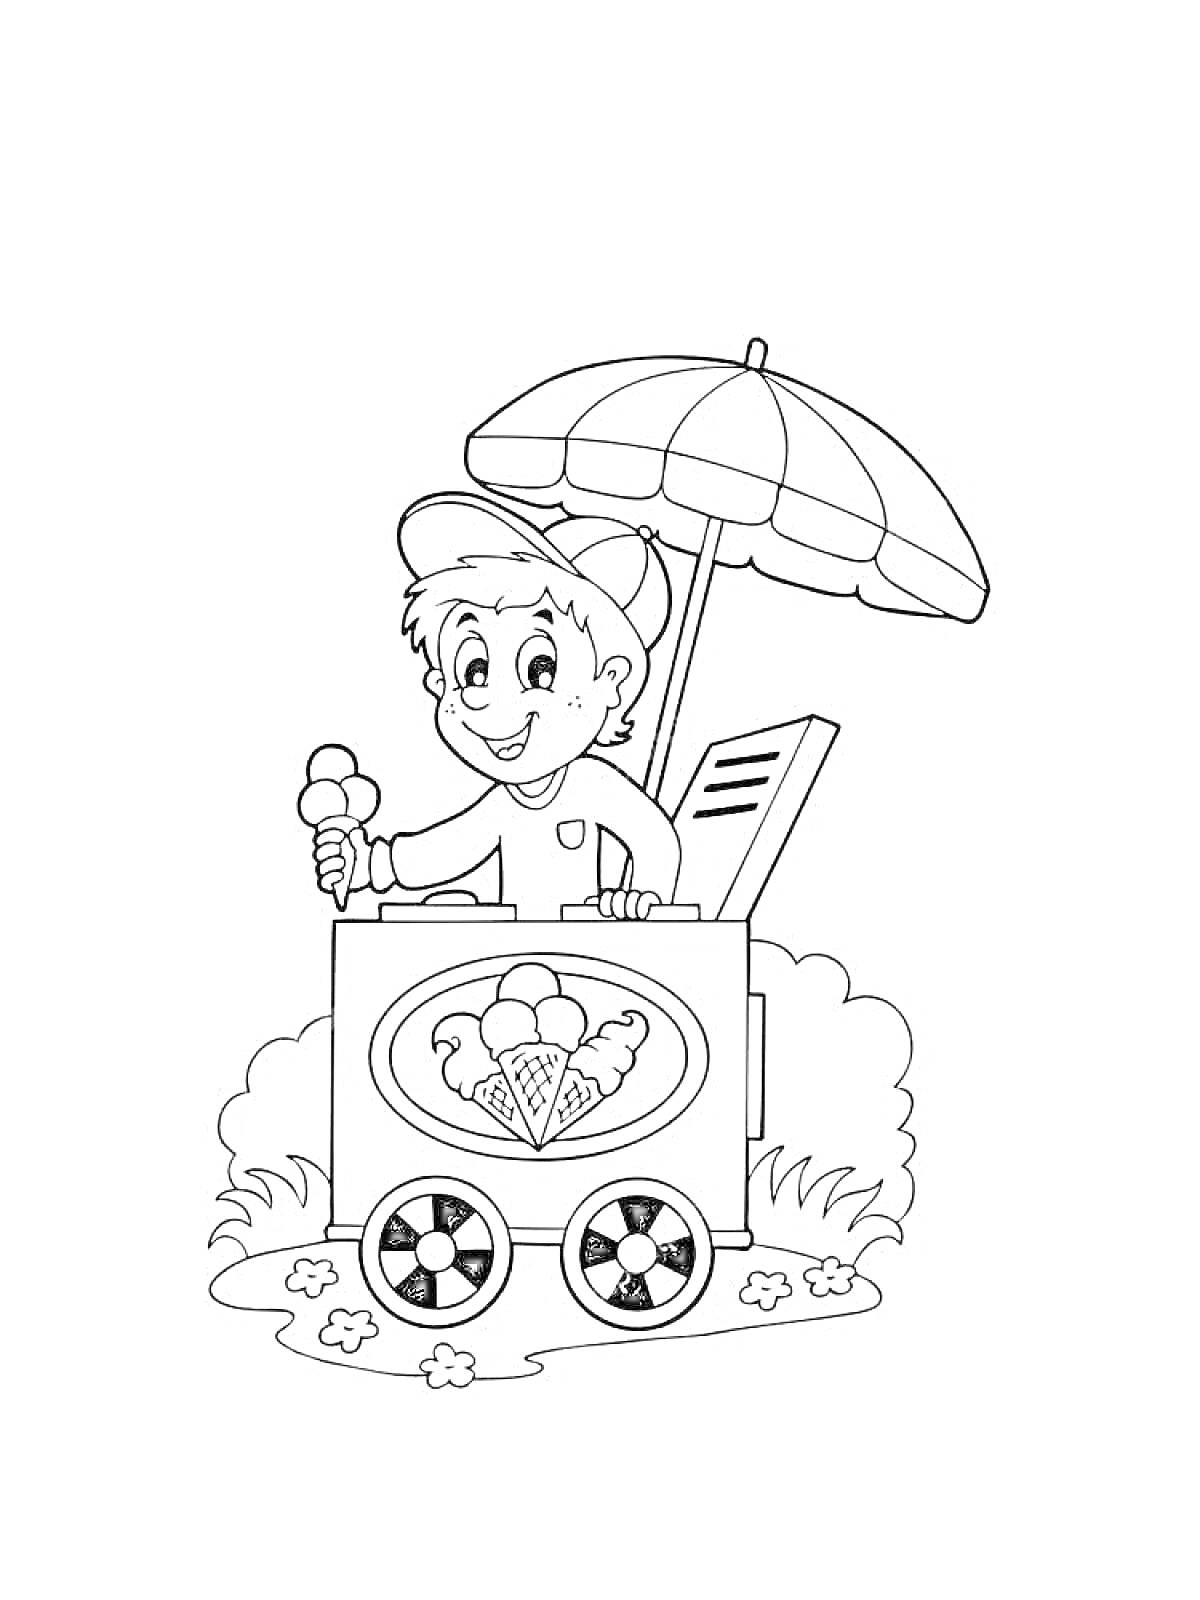 Раскраска Мальчик-мороженщик с тележкой для мороженого, зонтом и мороженым